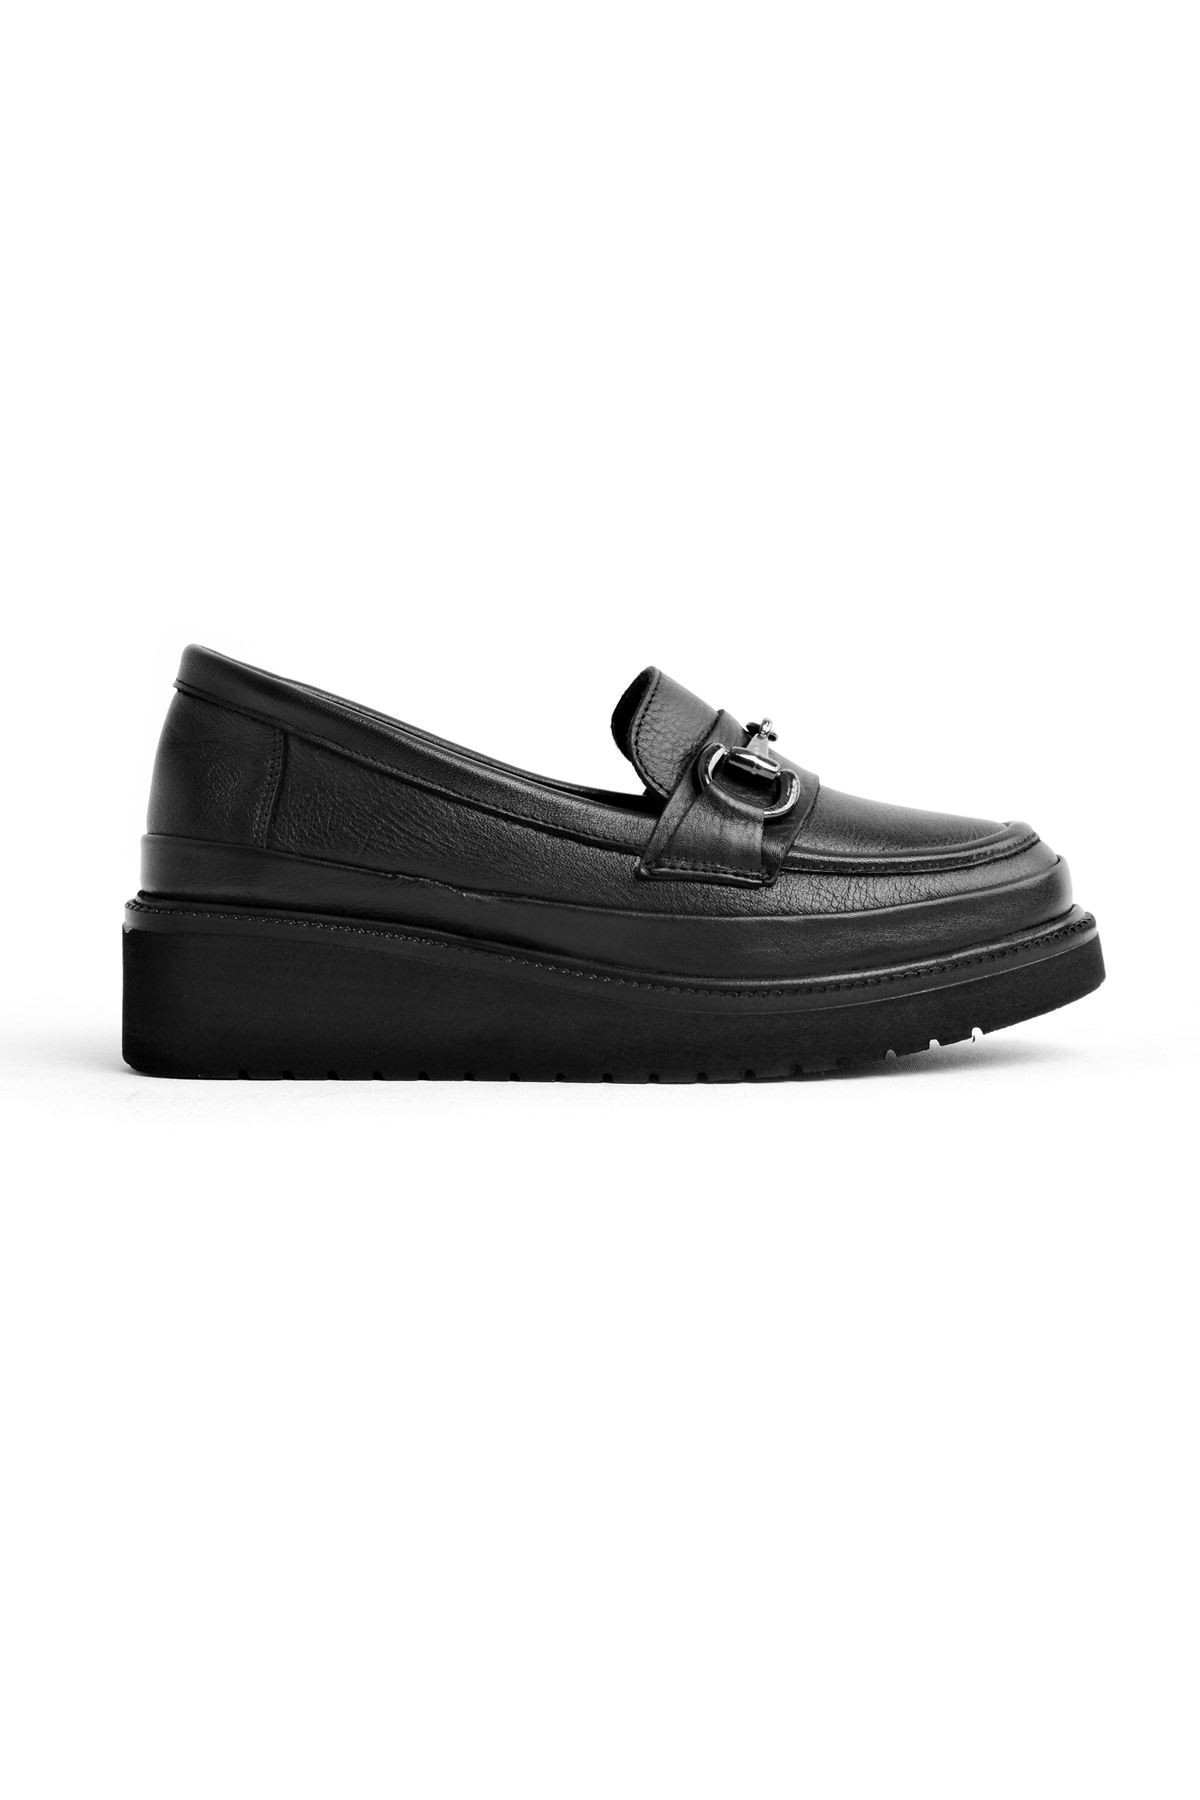 Always Kadın Günlük Hakiki Deri Loafer Tokalı Ayakkabı (4 cm ) - Siyah